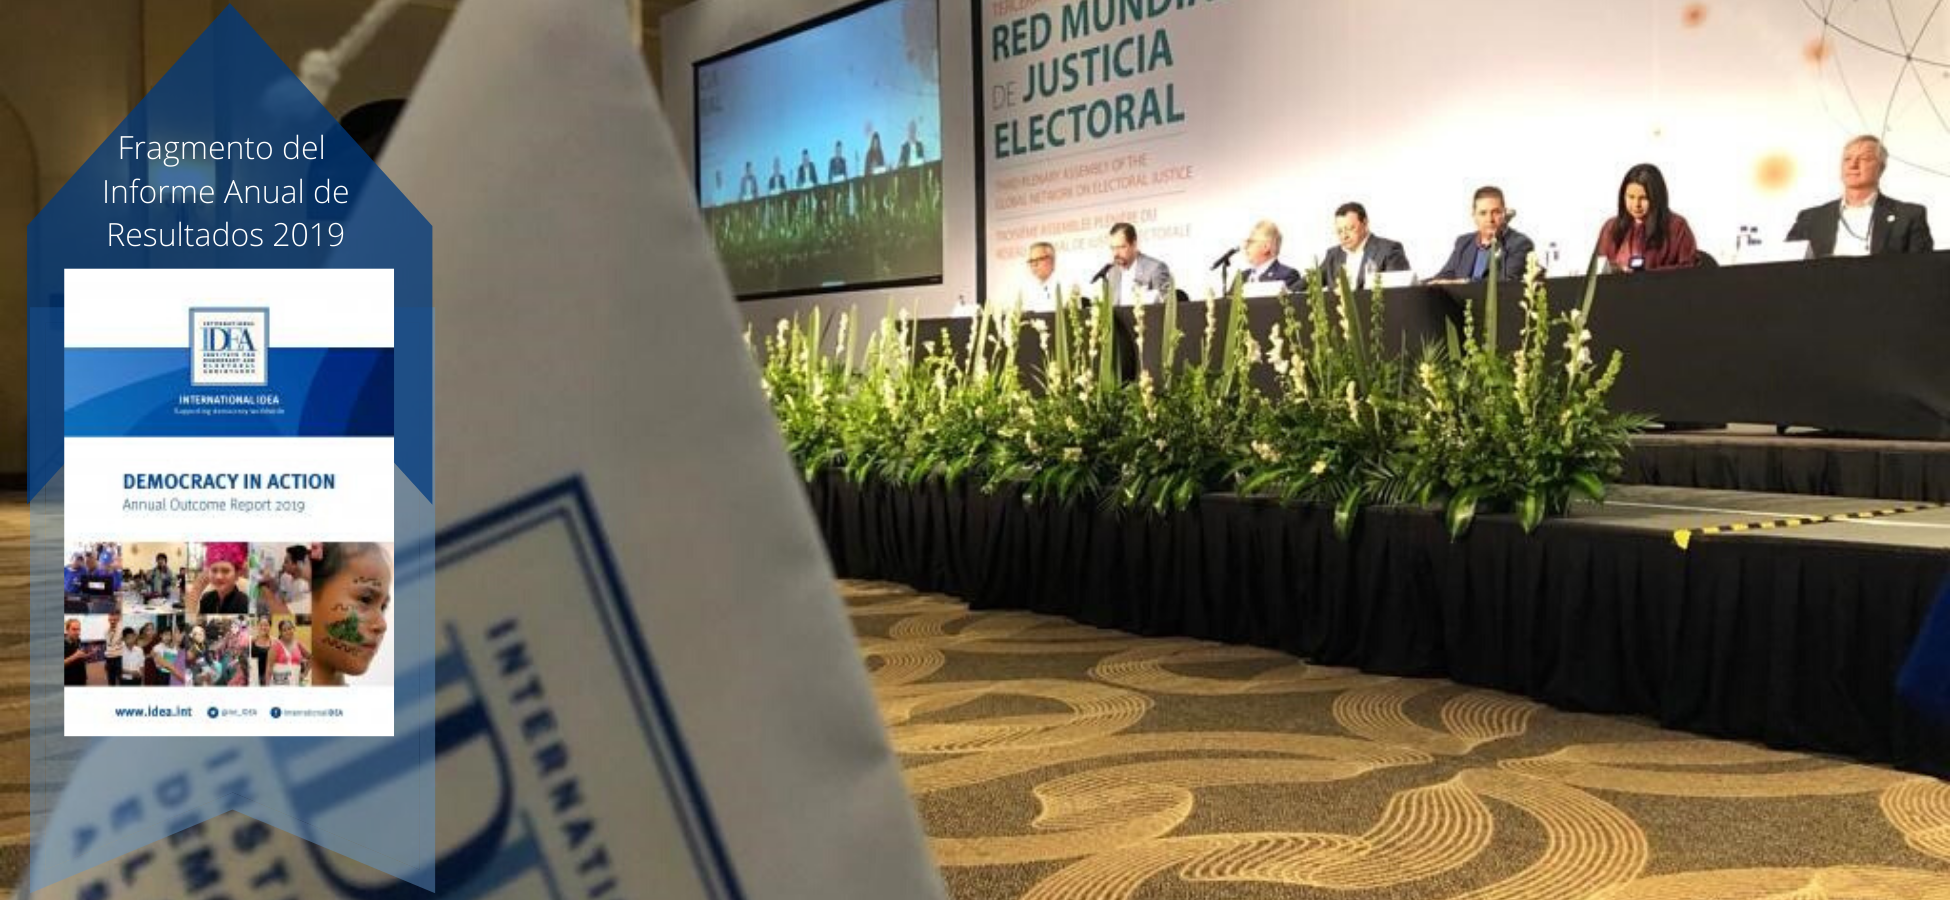 La asamblea plenaria de la Red Global de Justicia Electoral celebrada en Noviembre de 2019 en Los Cabos, México.